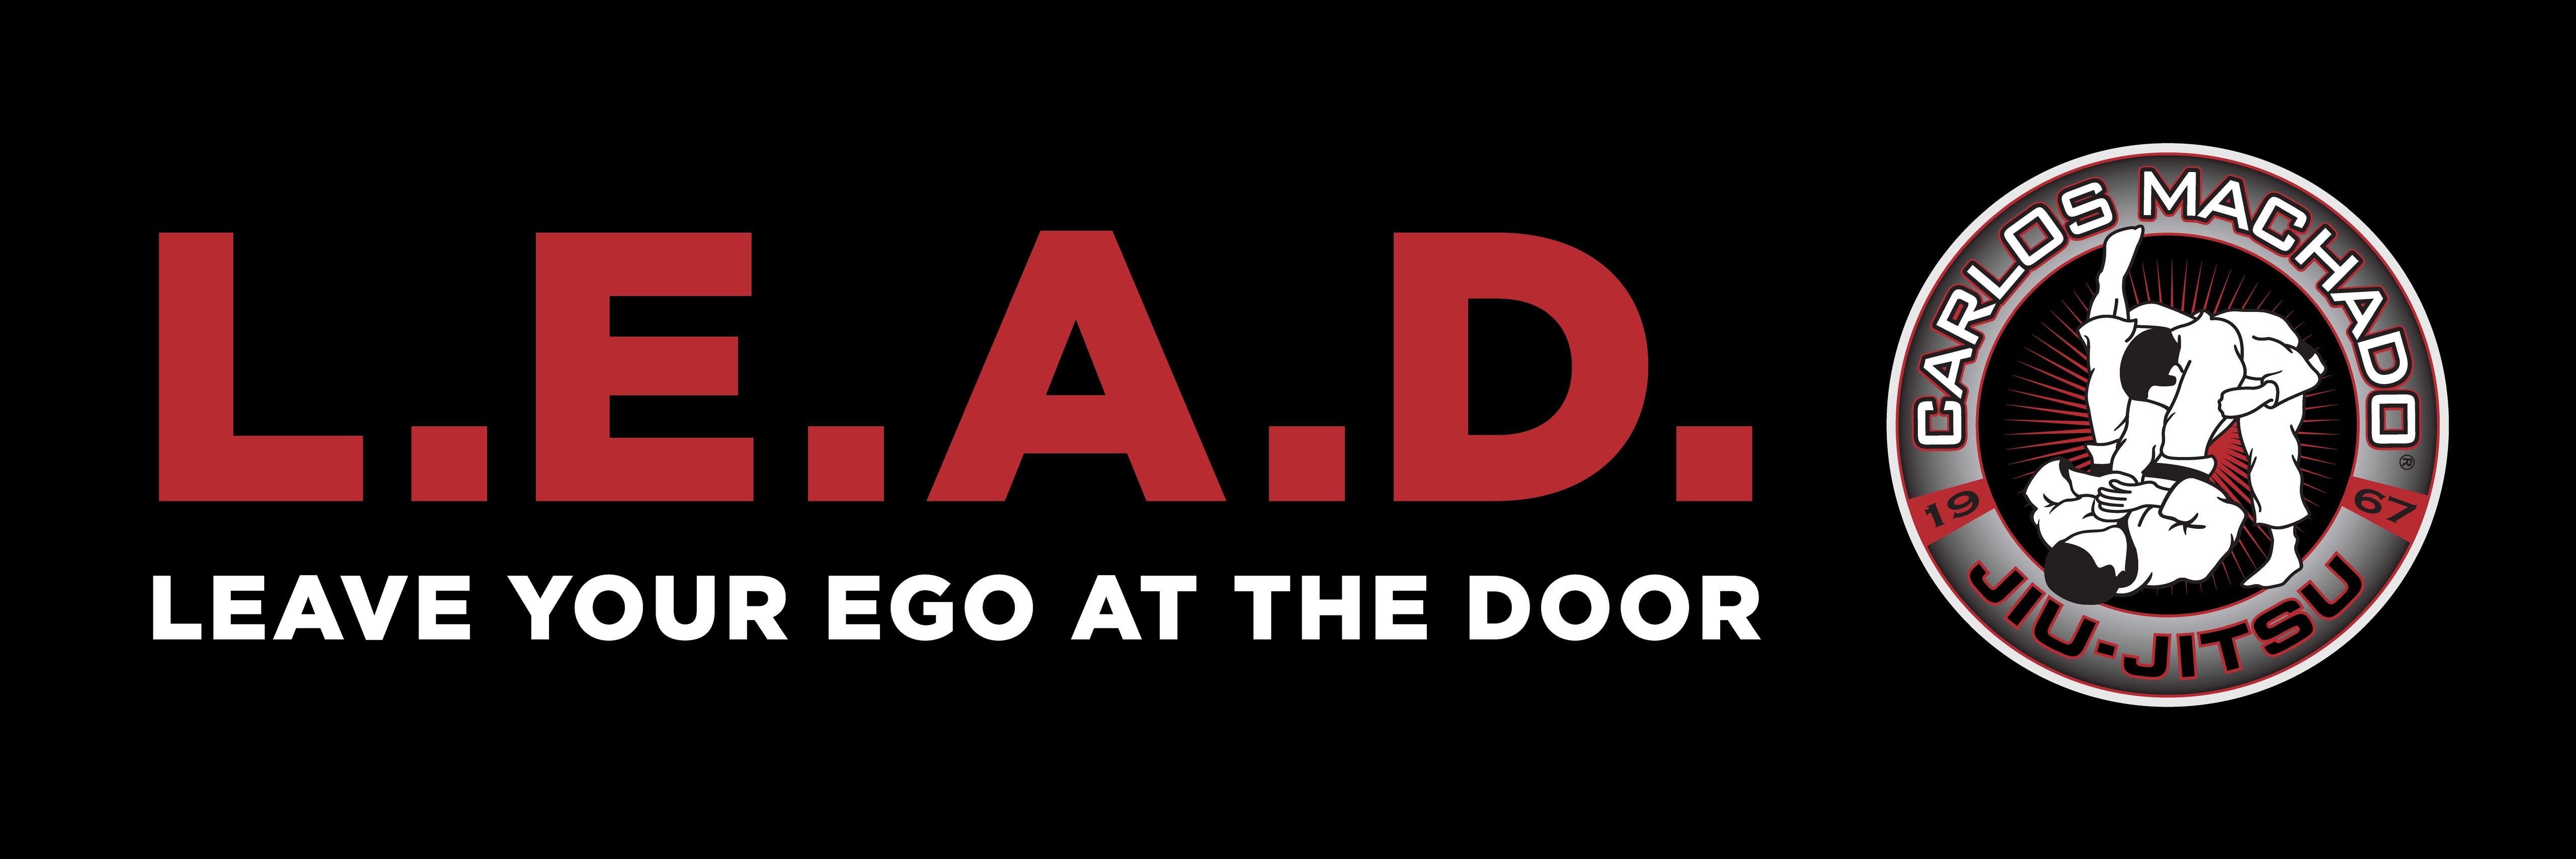 L.E.A.D Black and Red Banner - Carlos Machado Jiu-Jitsu Gear